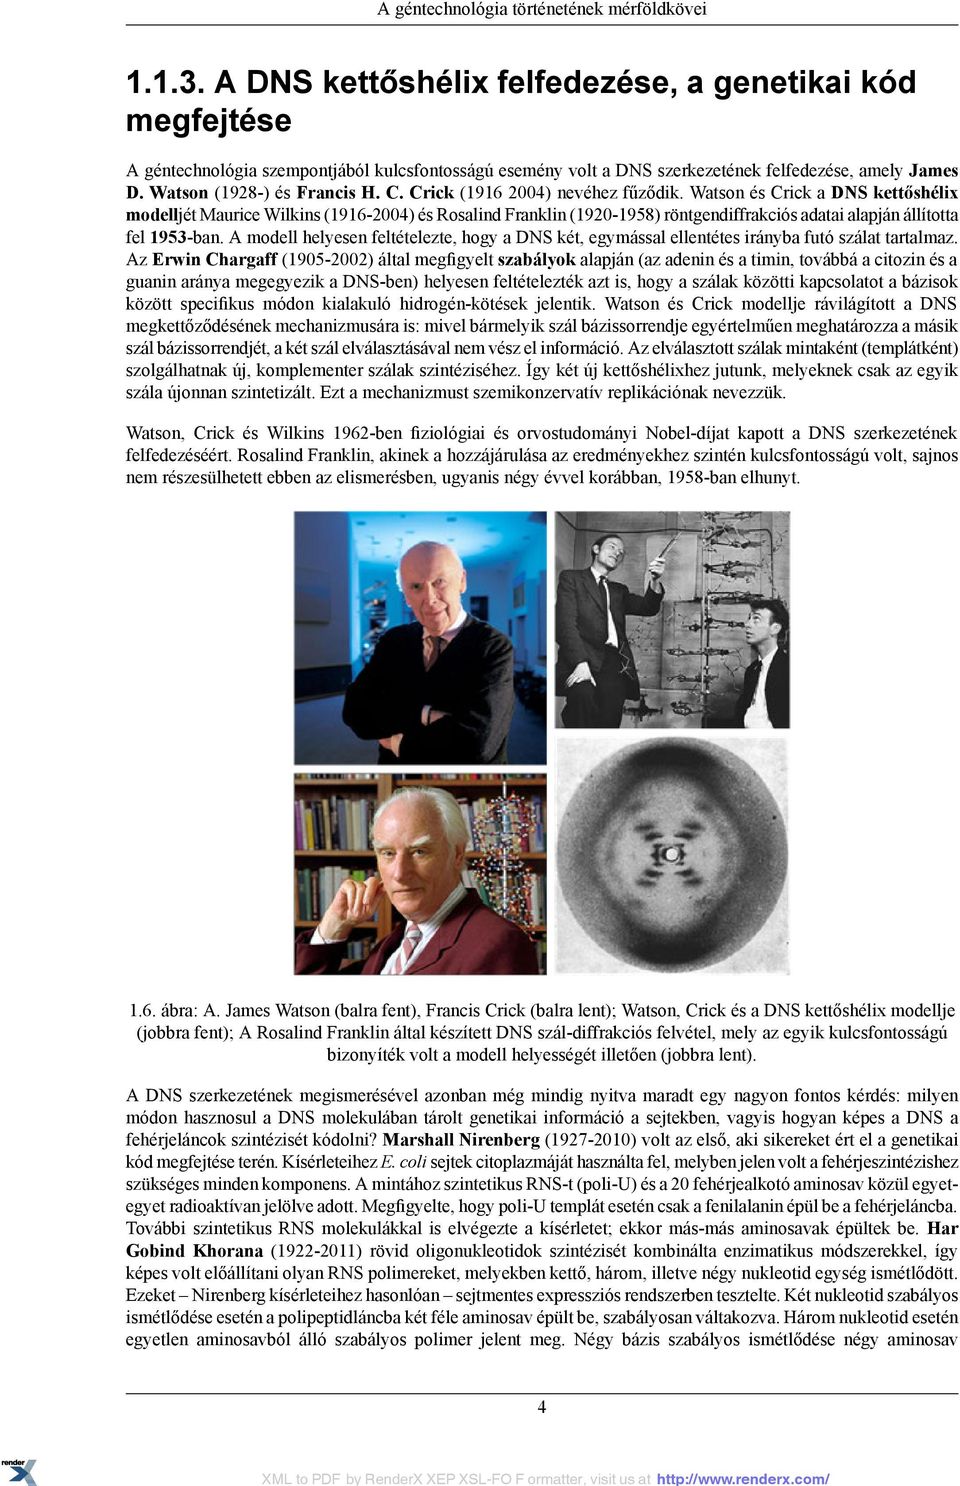 Crick (1916 2004) nevéhez fűződik. Watson és Crick a DNS kettőshélix modelljét Maurice Wilkins (1916-2004) és Rosalind Franklin (1920-1958) röntgendiffrakciós adatai alapján állította fel 1953-ban.